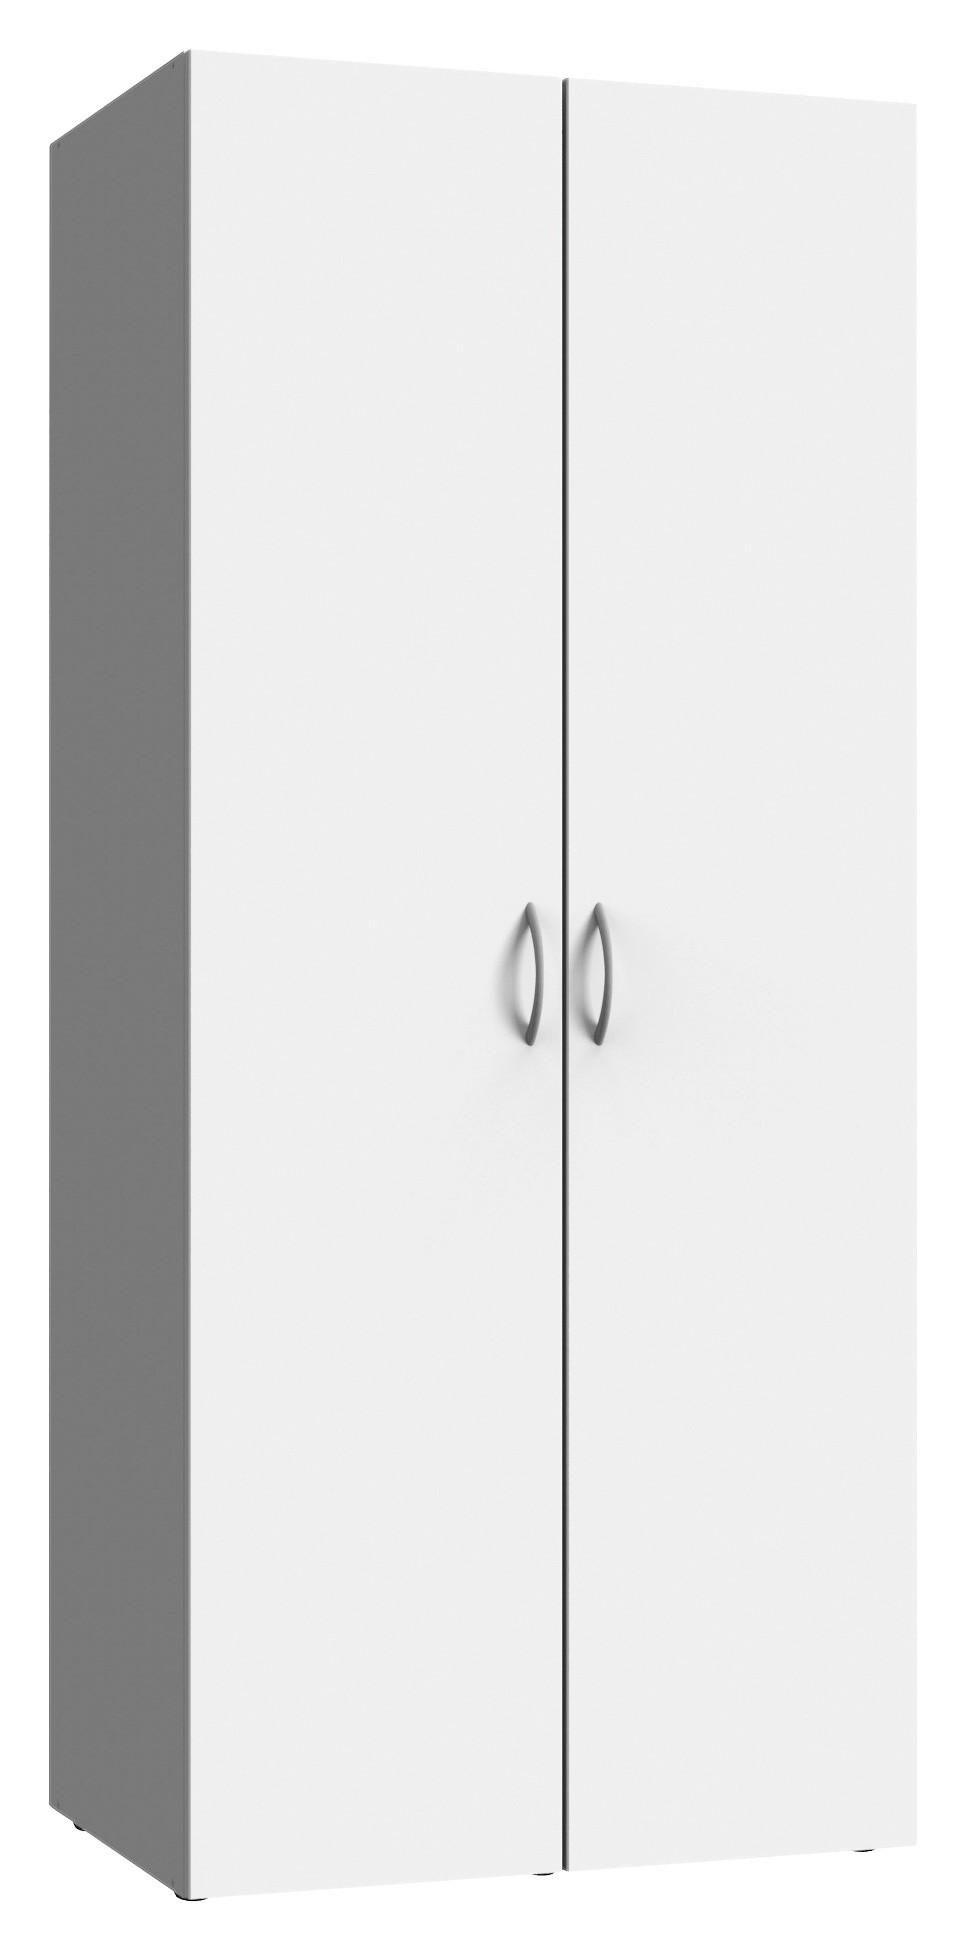 Kleiderschrank MRK weiß B/H/T: ca. 80x185x54 cm MRK - weiß (80,00/185,00/54,00cm)